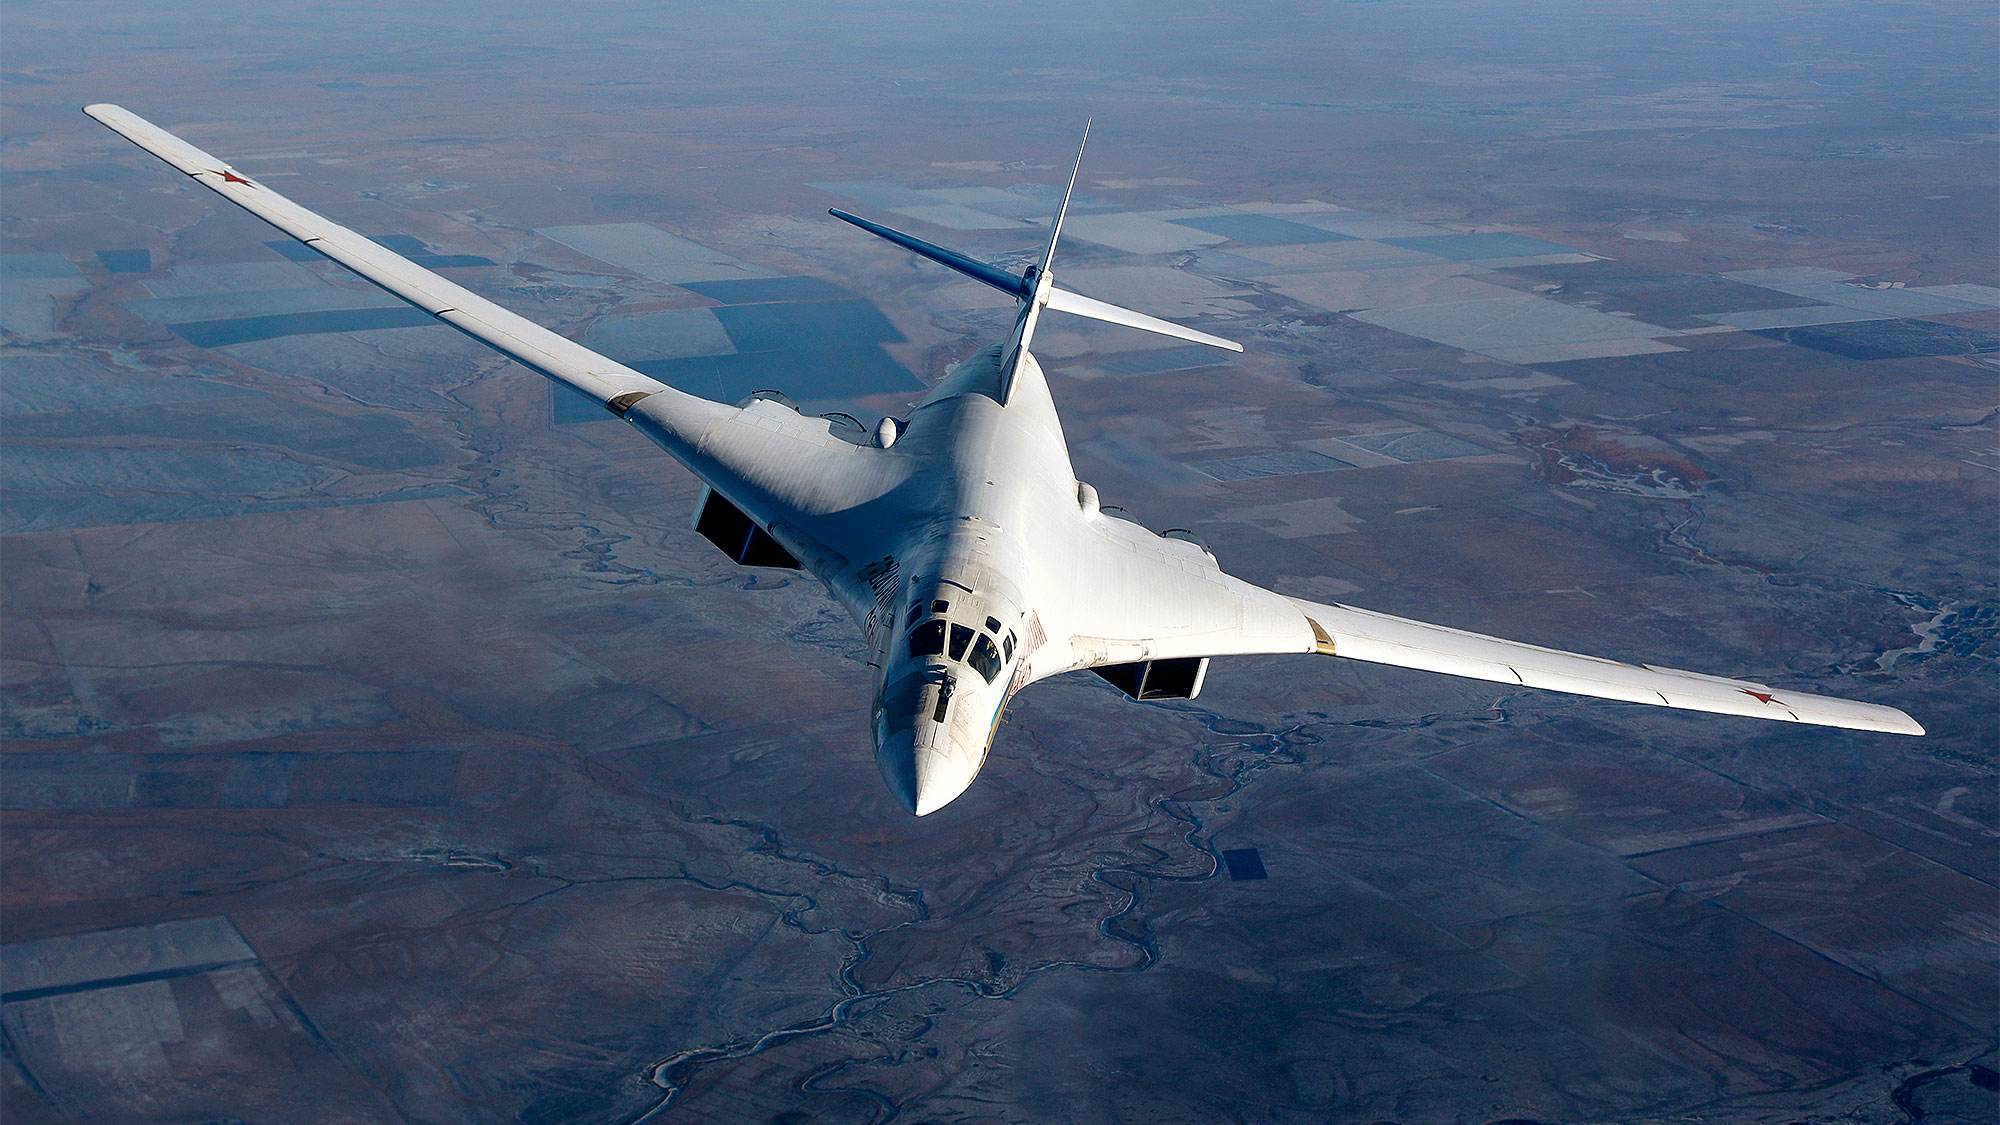 Ту 160 сверхзвуковой характеристики. Ту-160 белый лебедь. Белый лебедь самолет ту 160. Ракетоносец ту-160 белый лебедь. Стратегический бомбардировщик ту-160.